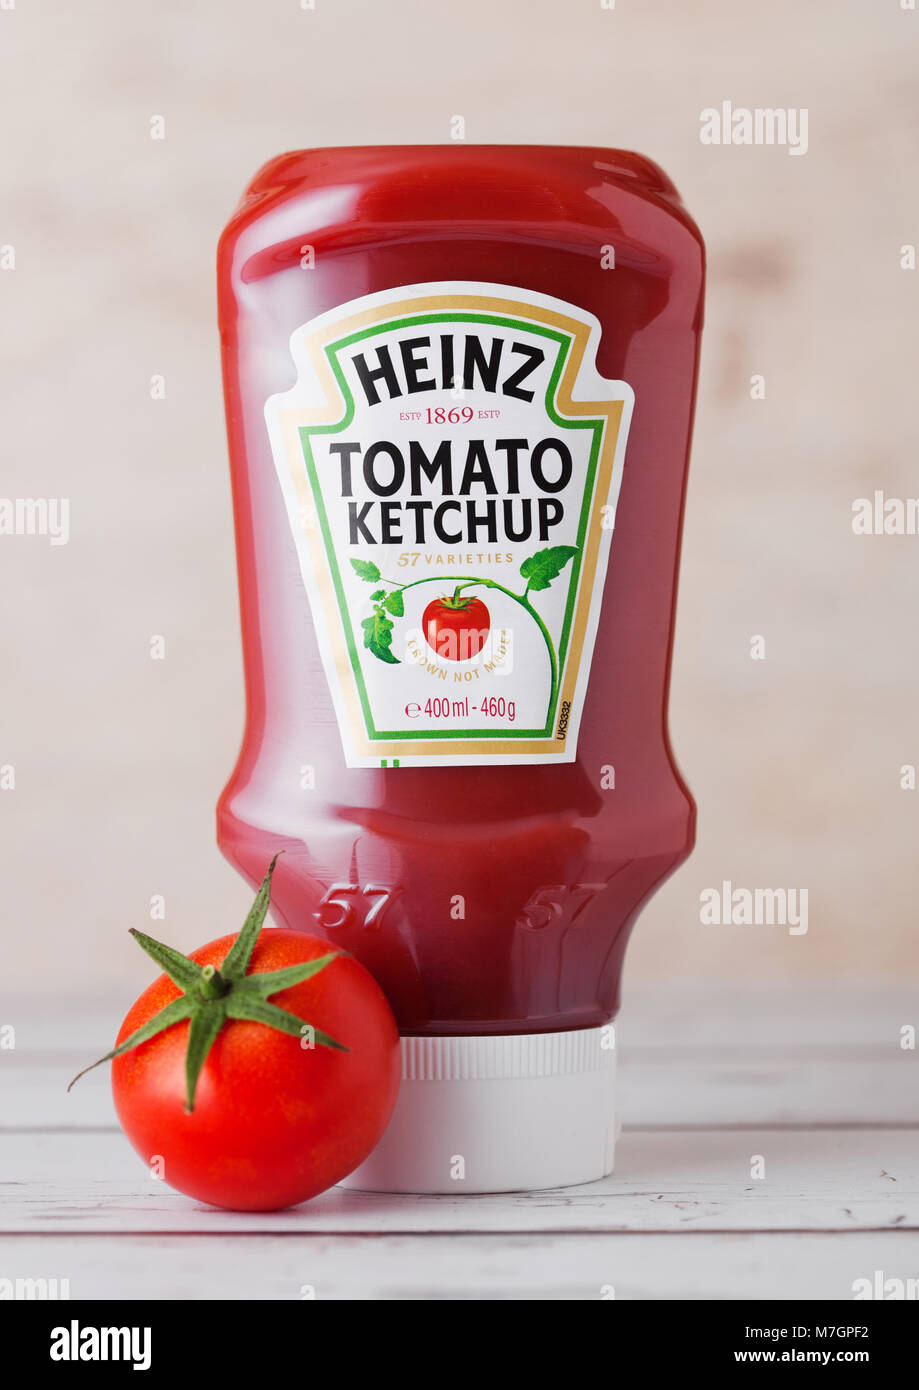 Londres, Reino Unido - 10 de marzo de 2018 : la botella de plástico de Ketchup Heinz sobre fondo de madera con tomate crudo. Fabricado por H.J. Heinz Company Foto de stock